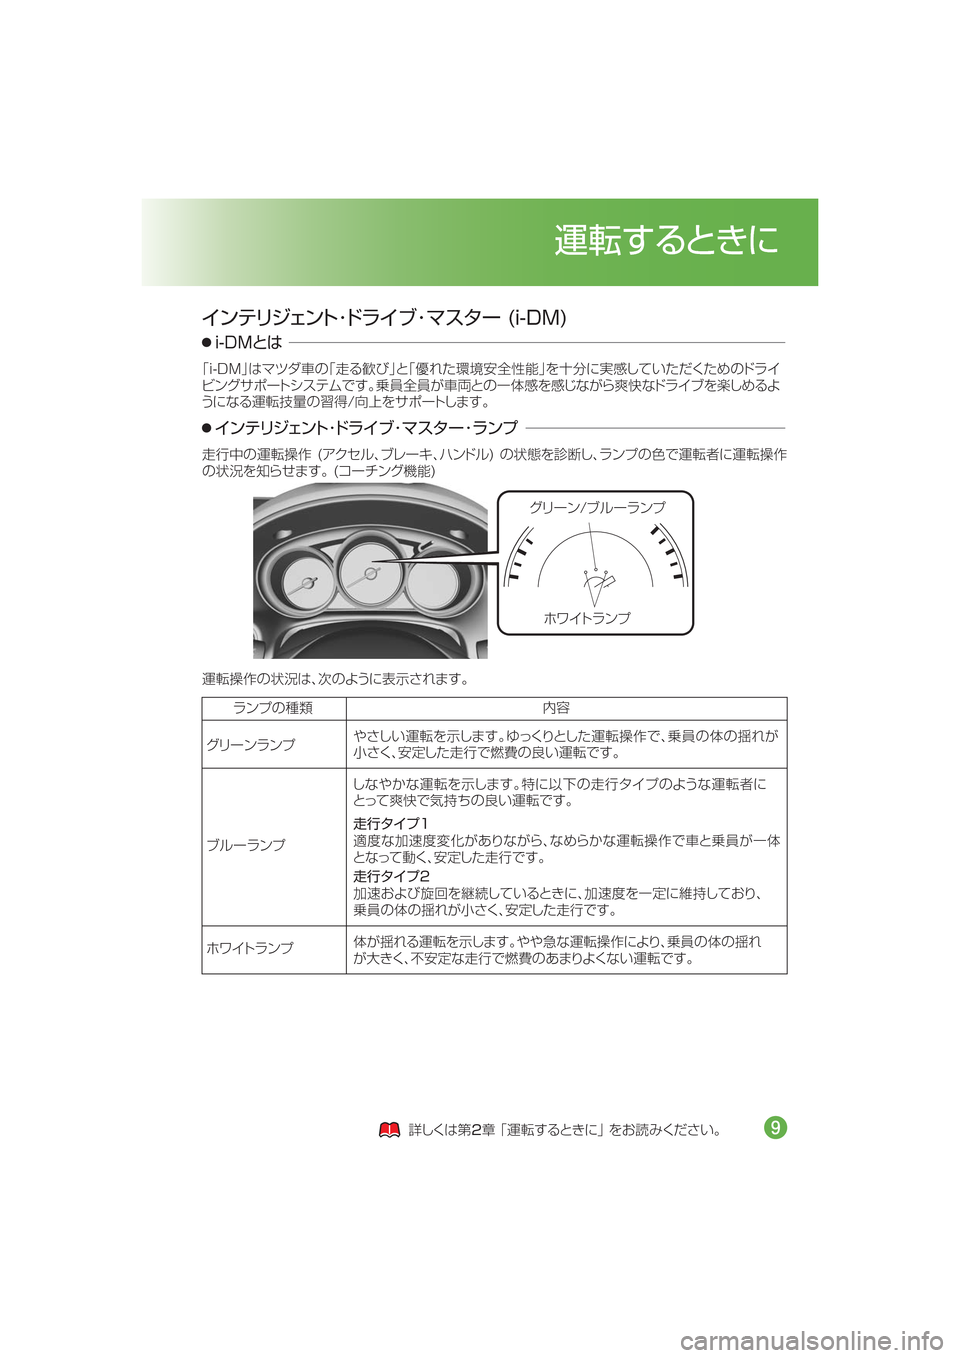 MAZDA MODEL CX-5 2015  取扱説明書 (in Japanese) ¬æ”ï�Òç”åïÓ
×ë ÄåïÓ
H�J��%�.Ix